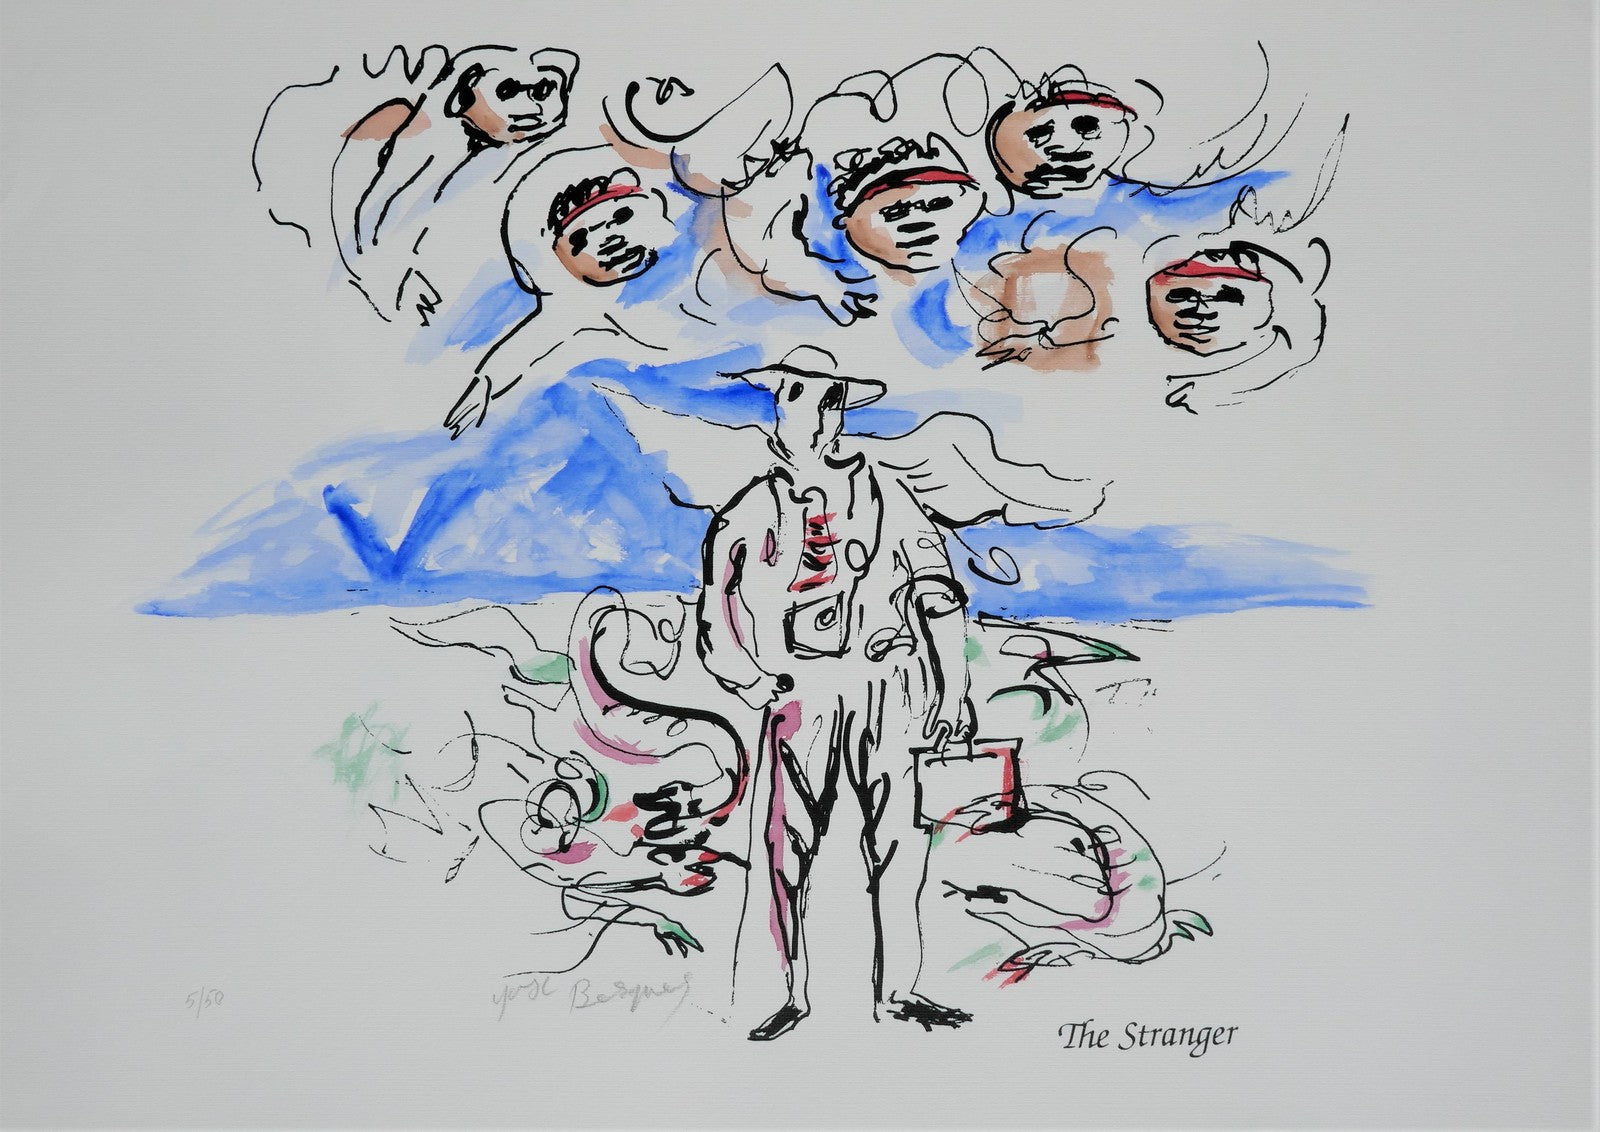 Yosl Bergner 'The Stranger, from The Kimberley Album'